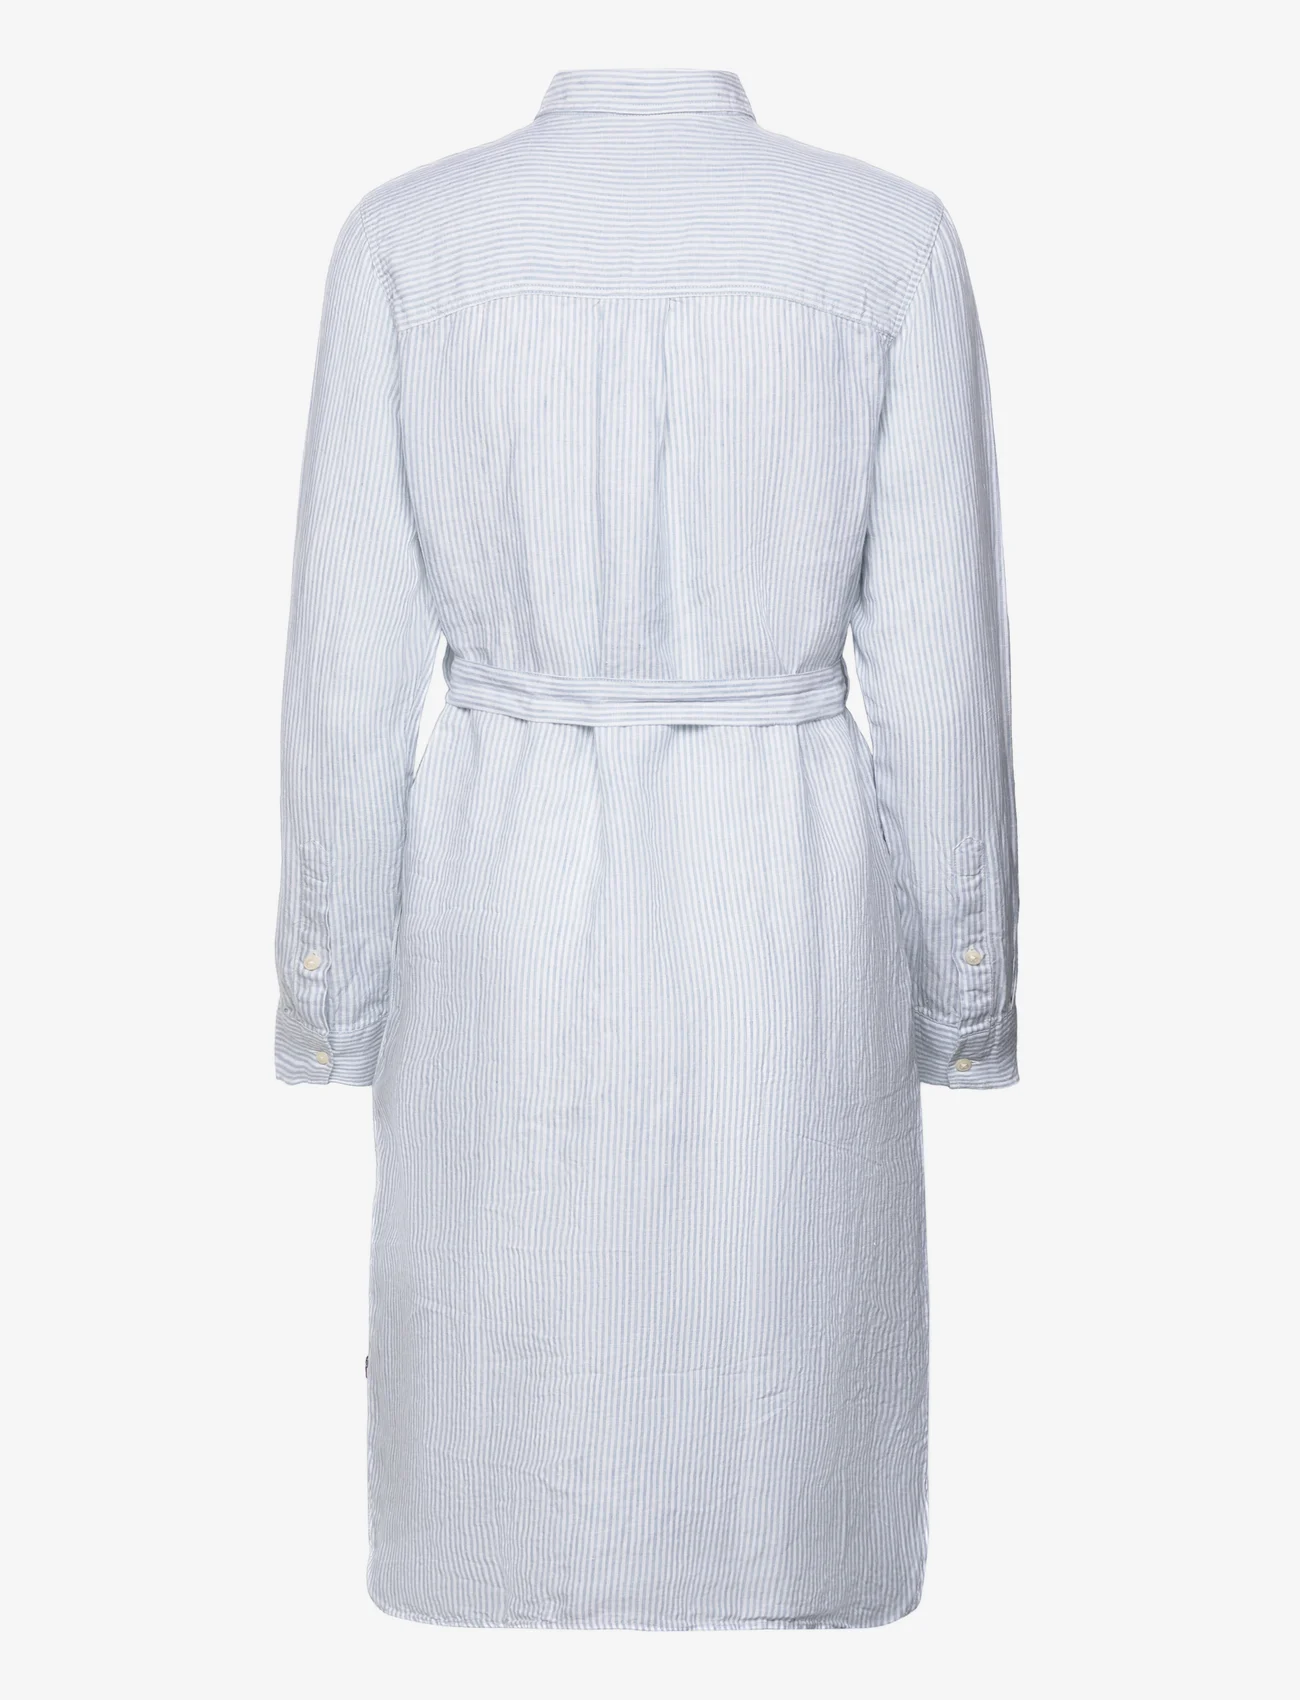 Lexington Clothing - Isa Linen Shirt Dress - summer dresses - lt blue/white stripe - 1